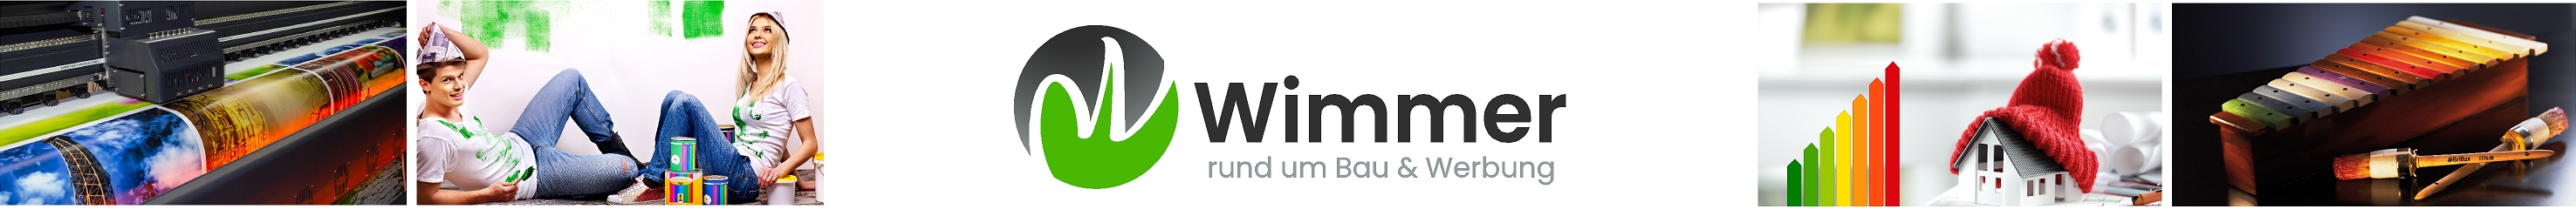 Malerei Robert Wimmer GmbH banner image